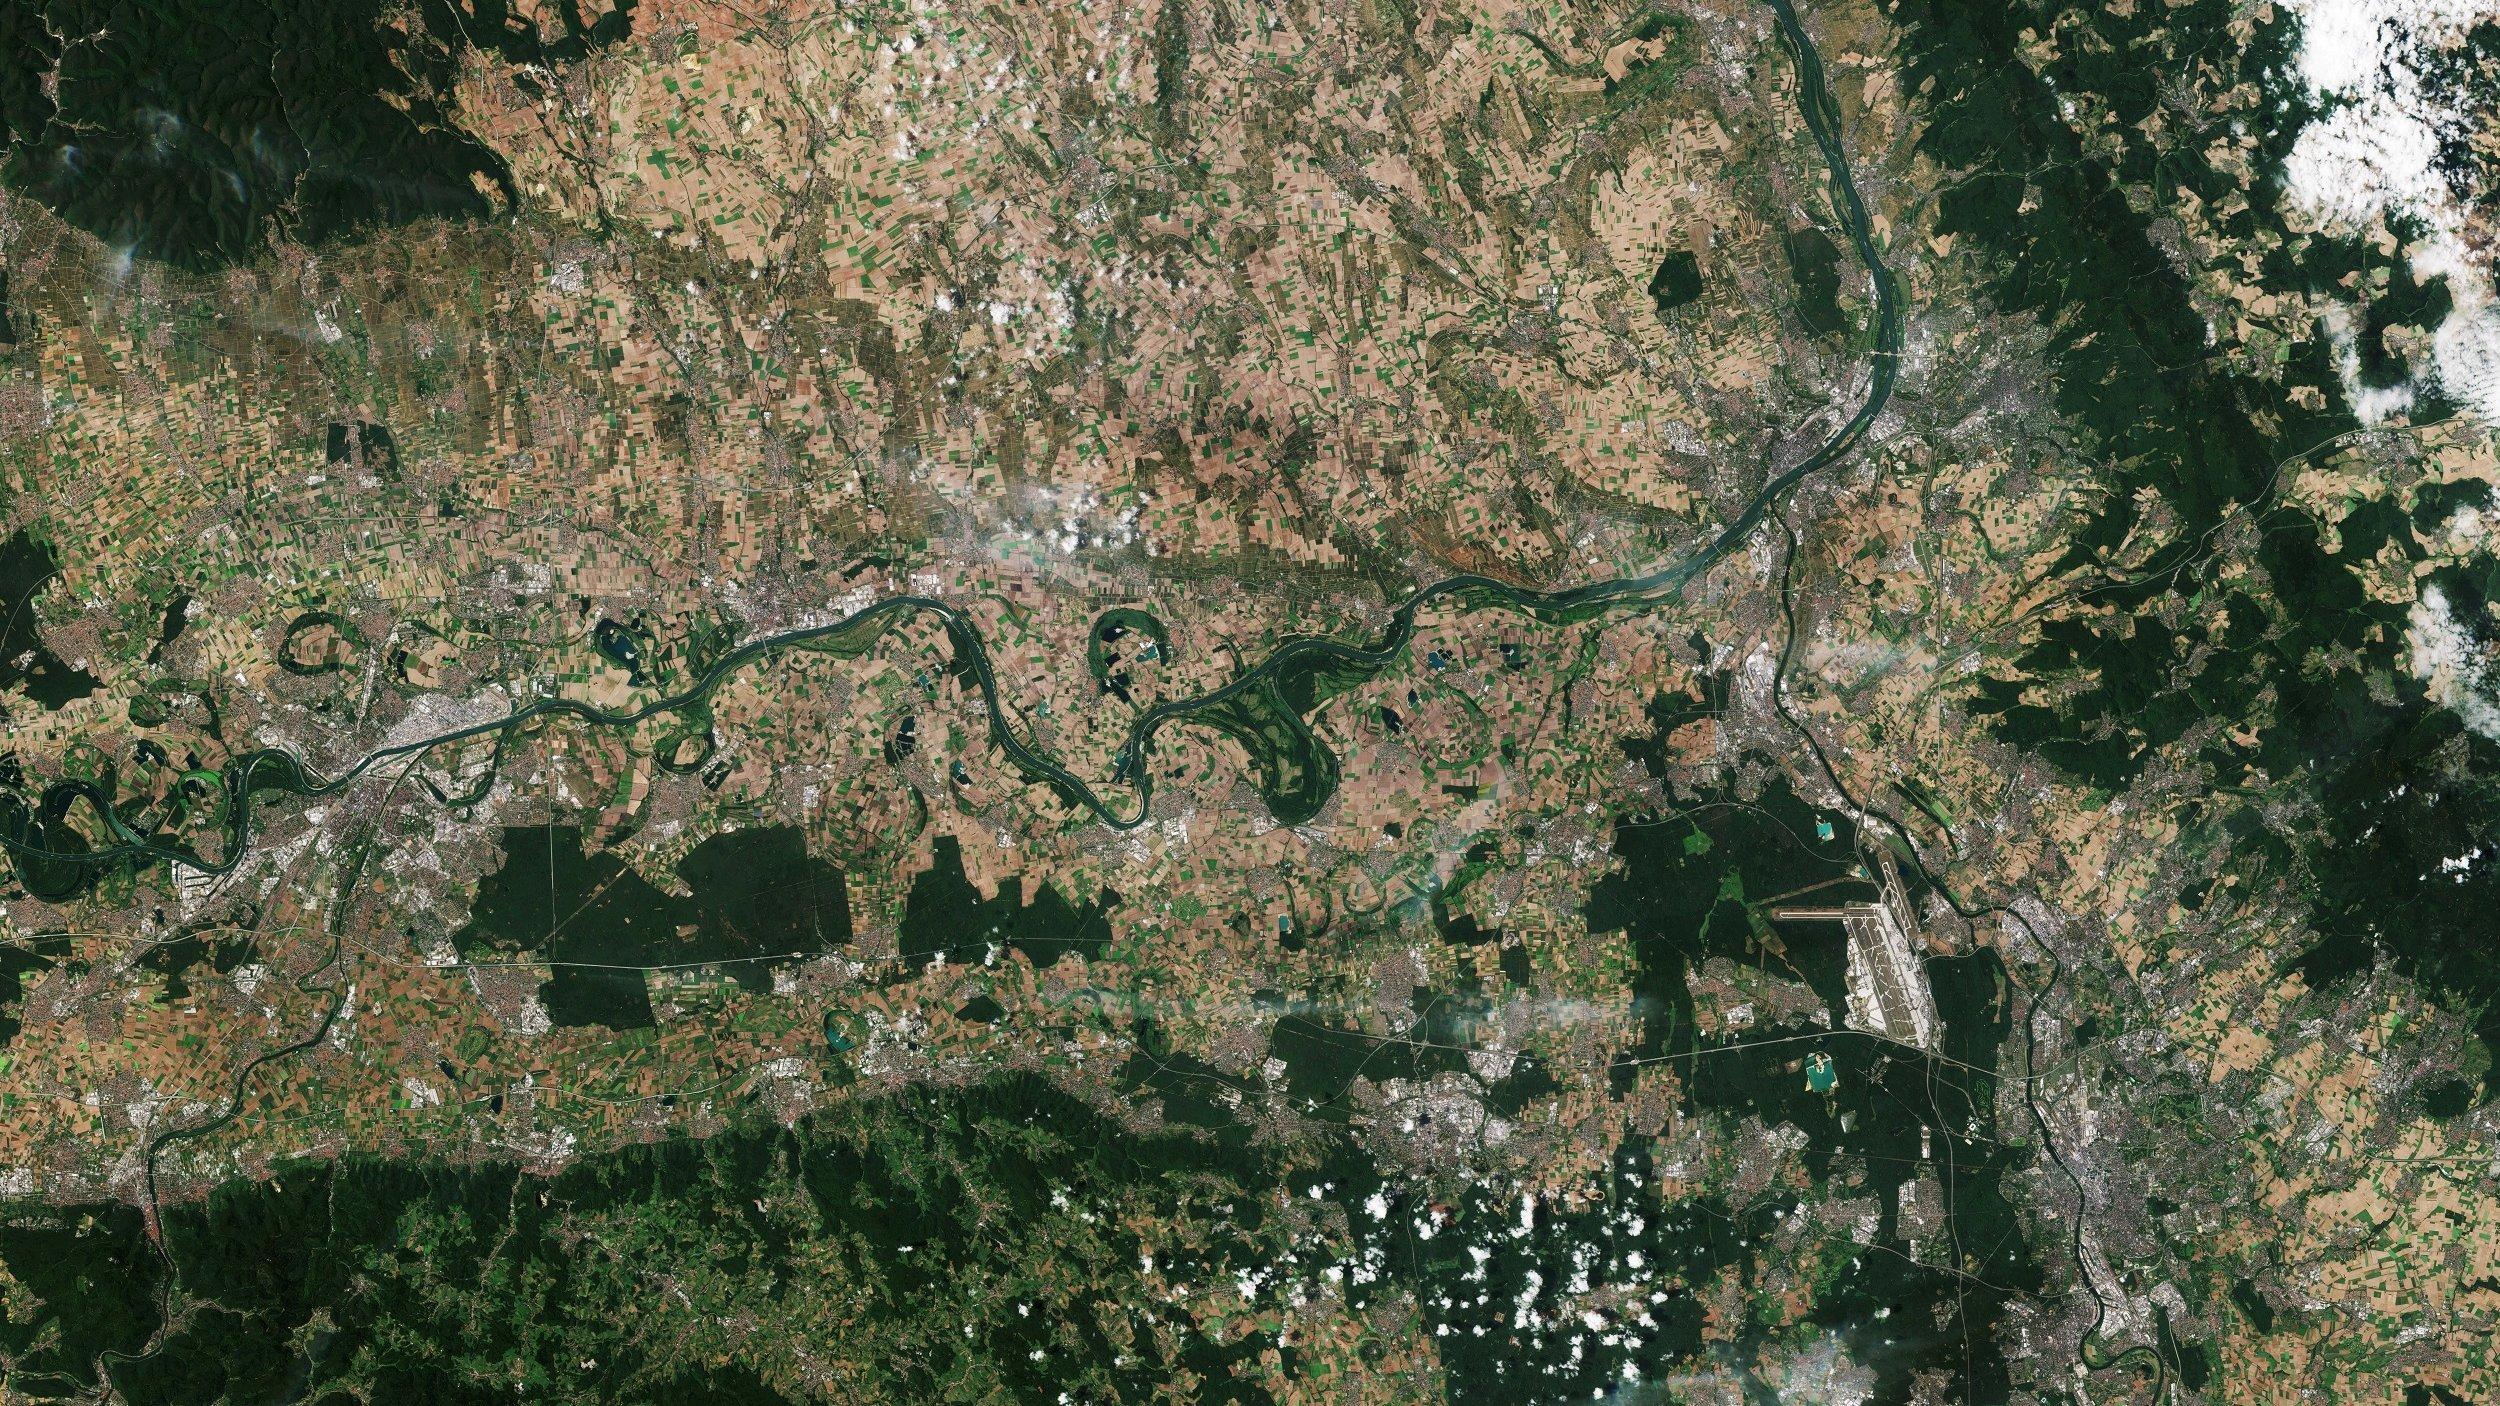 Satellitenbild des Rhein-Main-Gebiet südlich der Stadt Frankfurt, einem der führenden Wirtschafts-, Verkehrs- und Innovationszentren Europas.